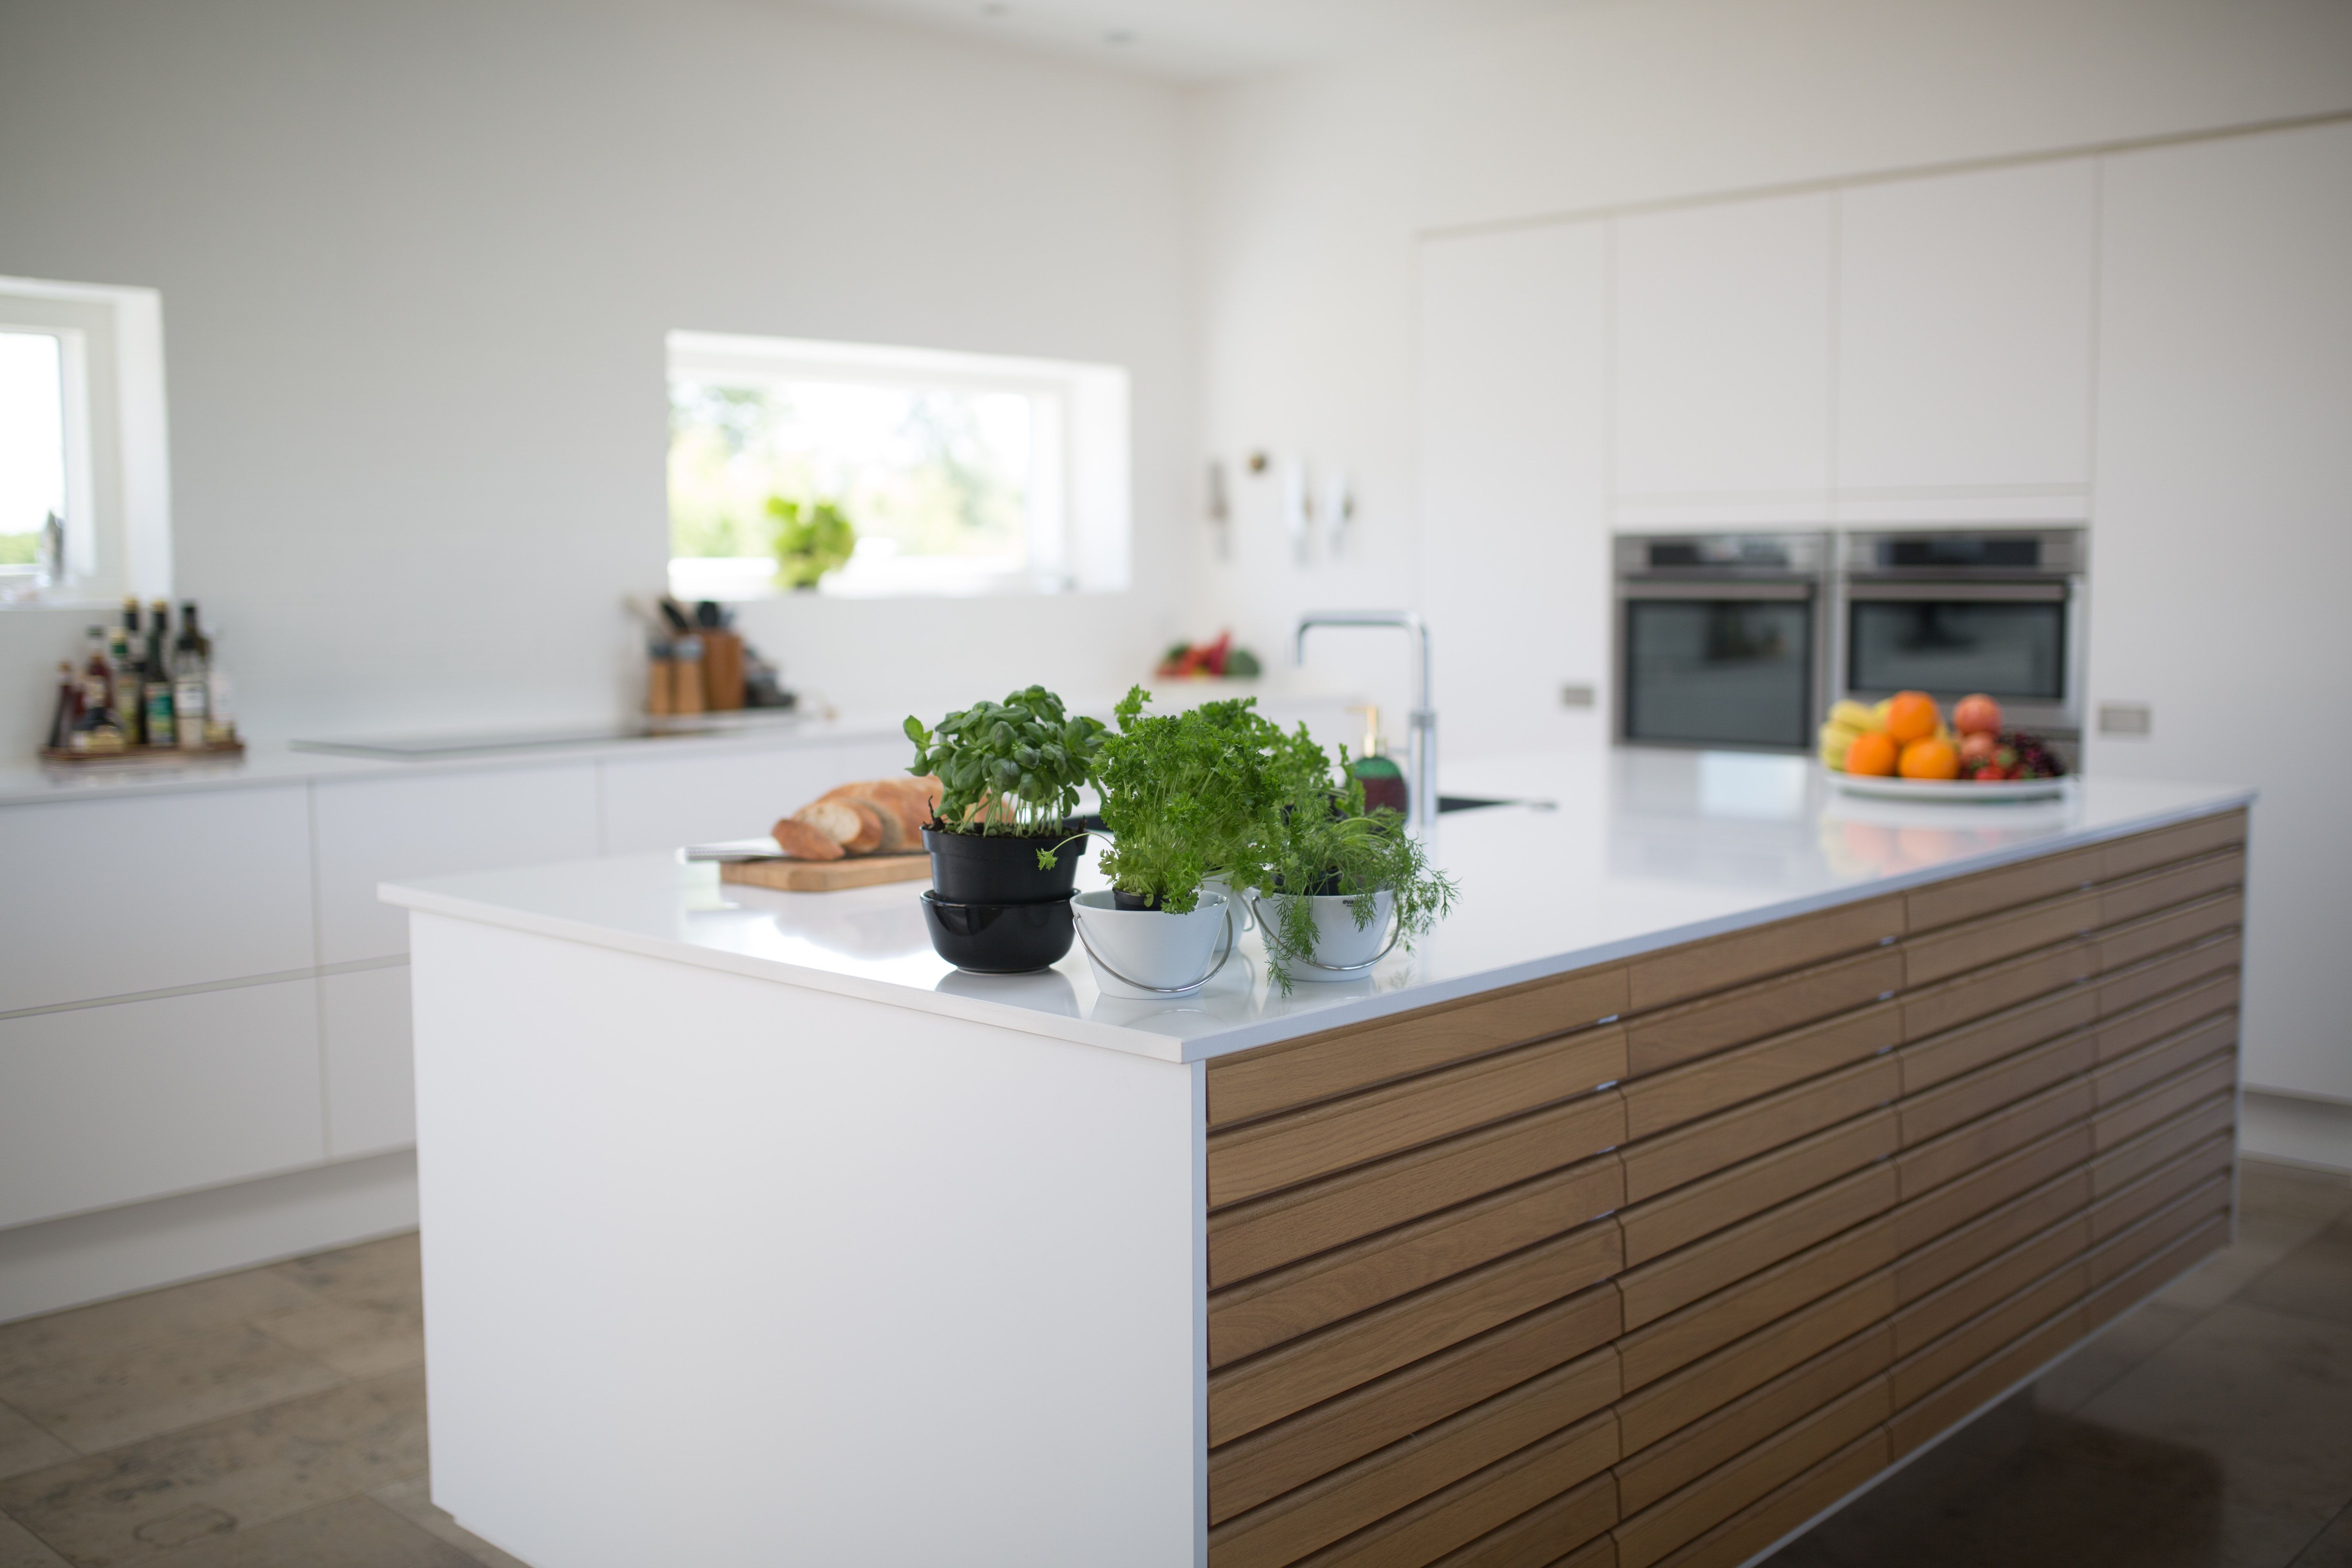 Навесные шкафы в кухне - нужны ли они - какие преимущества и недостатки - Недвижимость